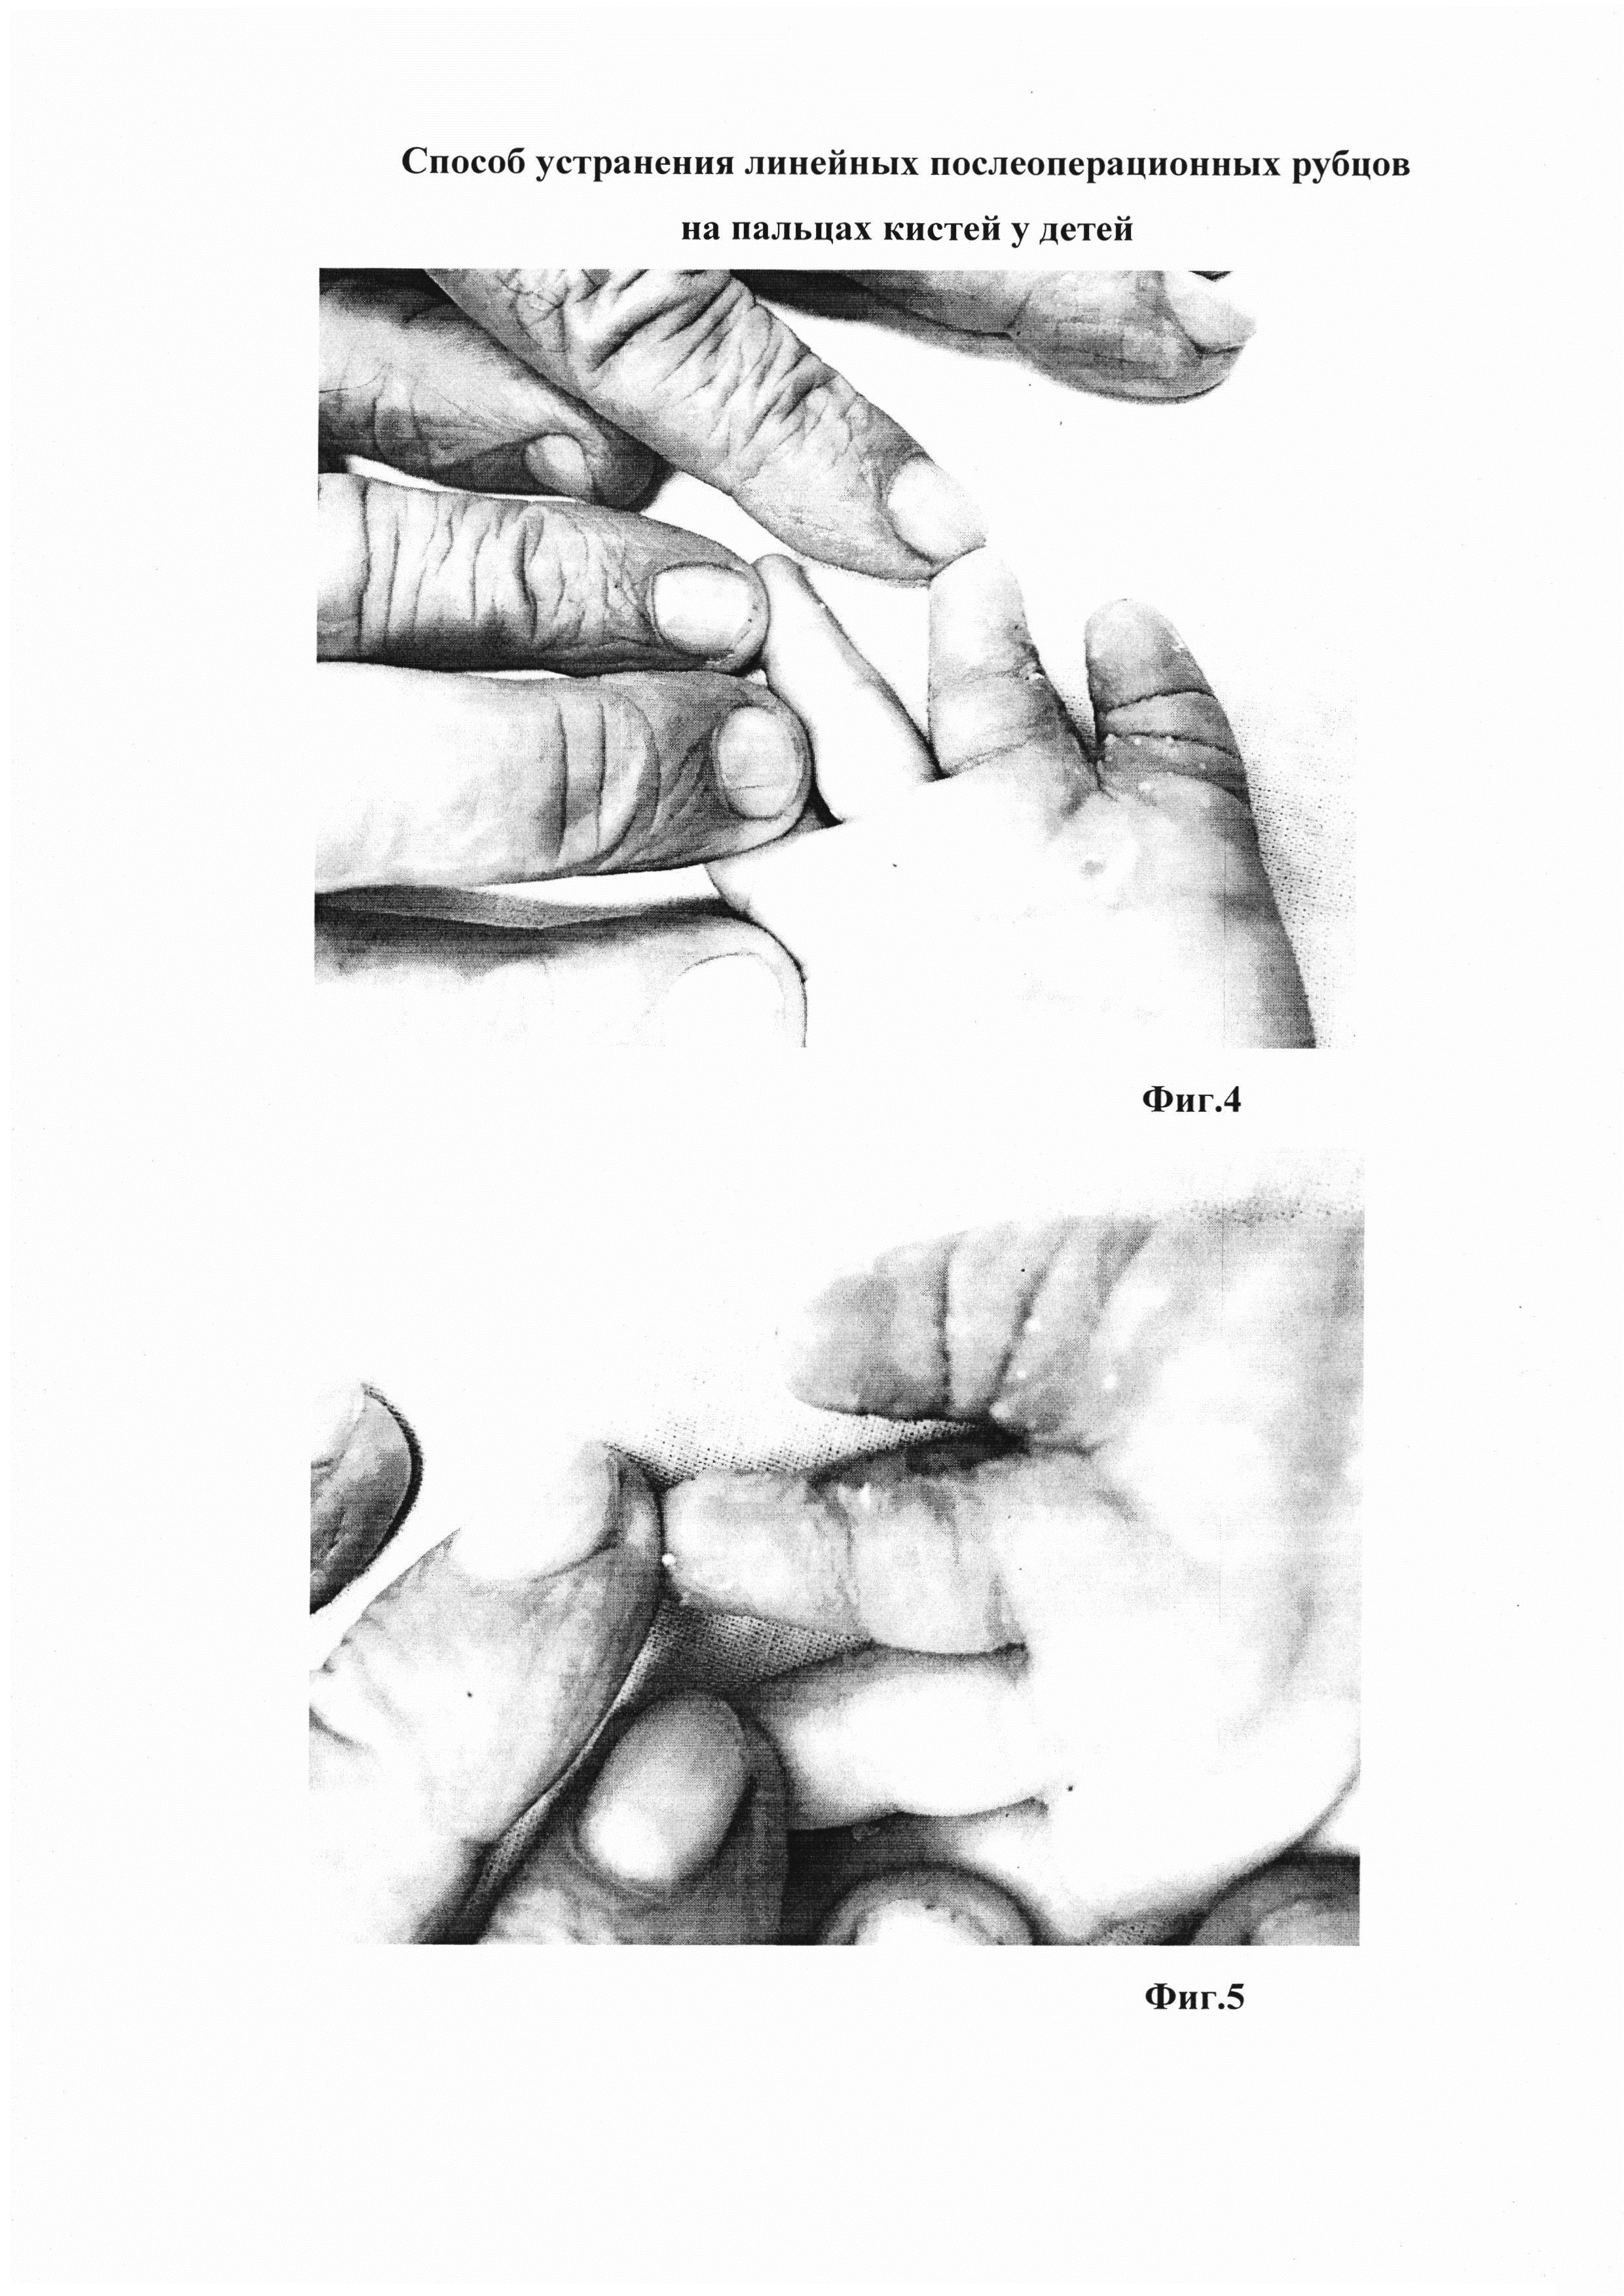 Способ устранения линейных послеоперационных рубцов на пальцах кистей у детей